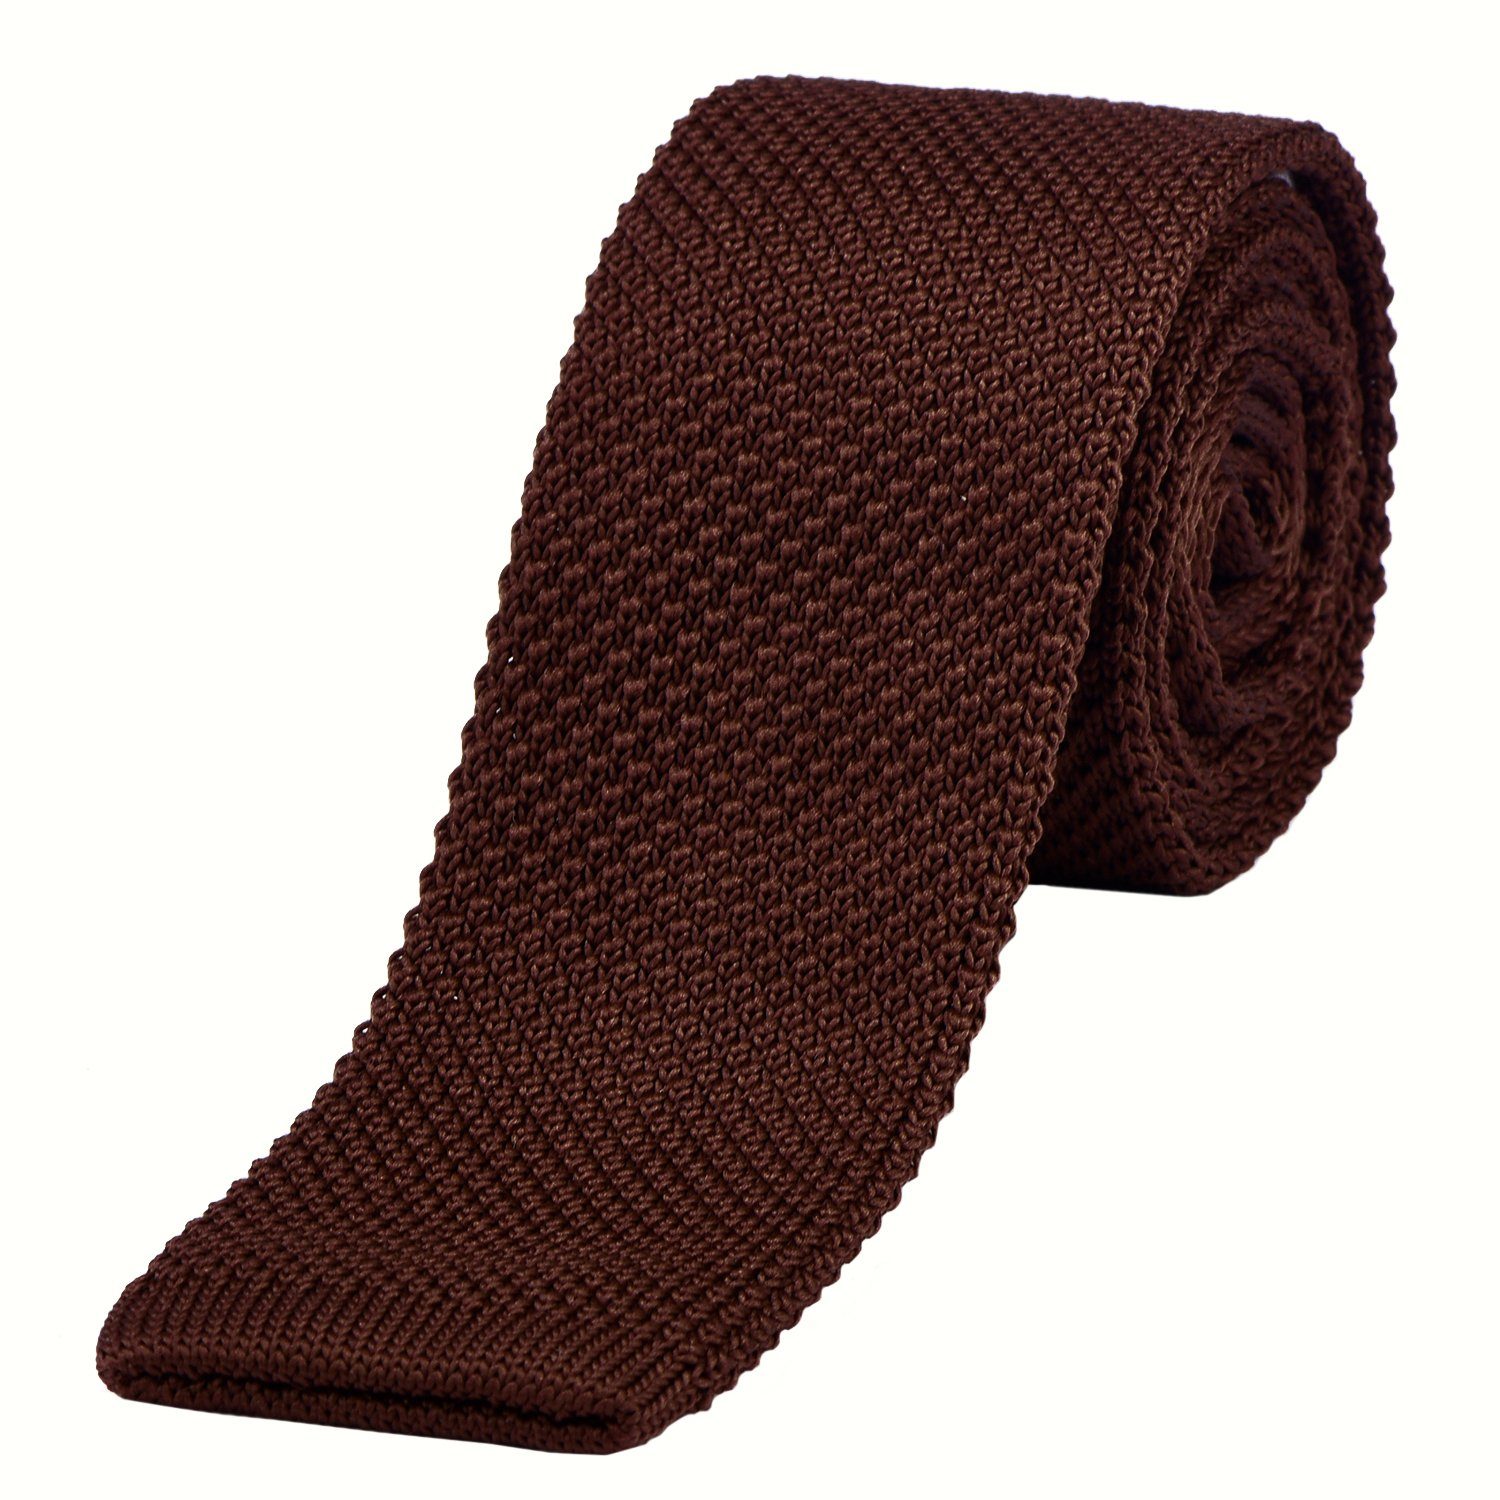 DonDon Krawatte schmale Krawatte 5 cm Wollkrawatte (Packung, 1-St) Strickkrawatte, Retro-Look, für Büro oder festliche Veranstaltungen braun